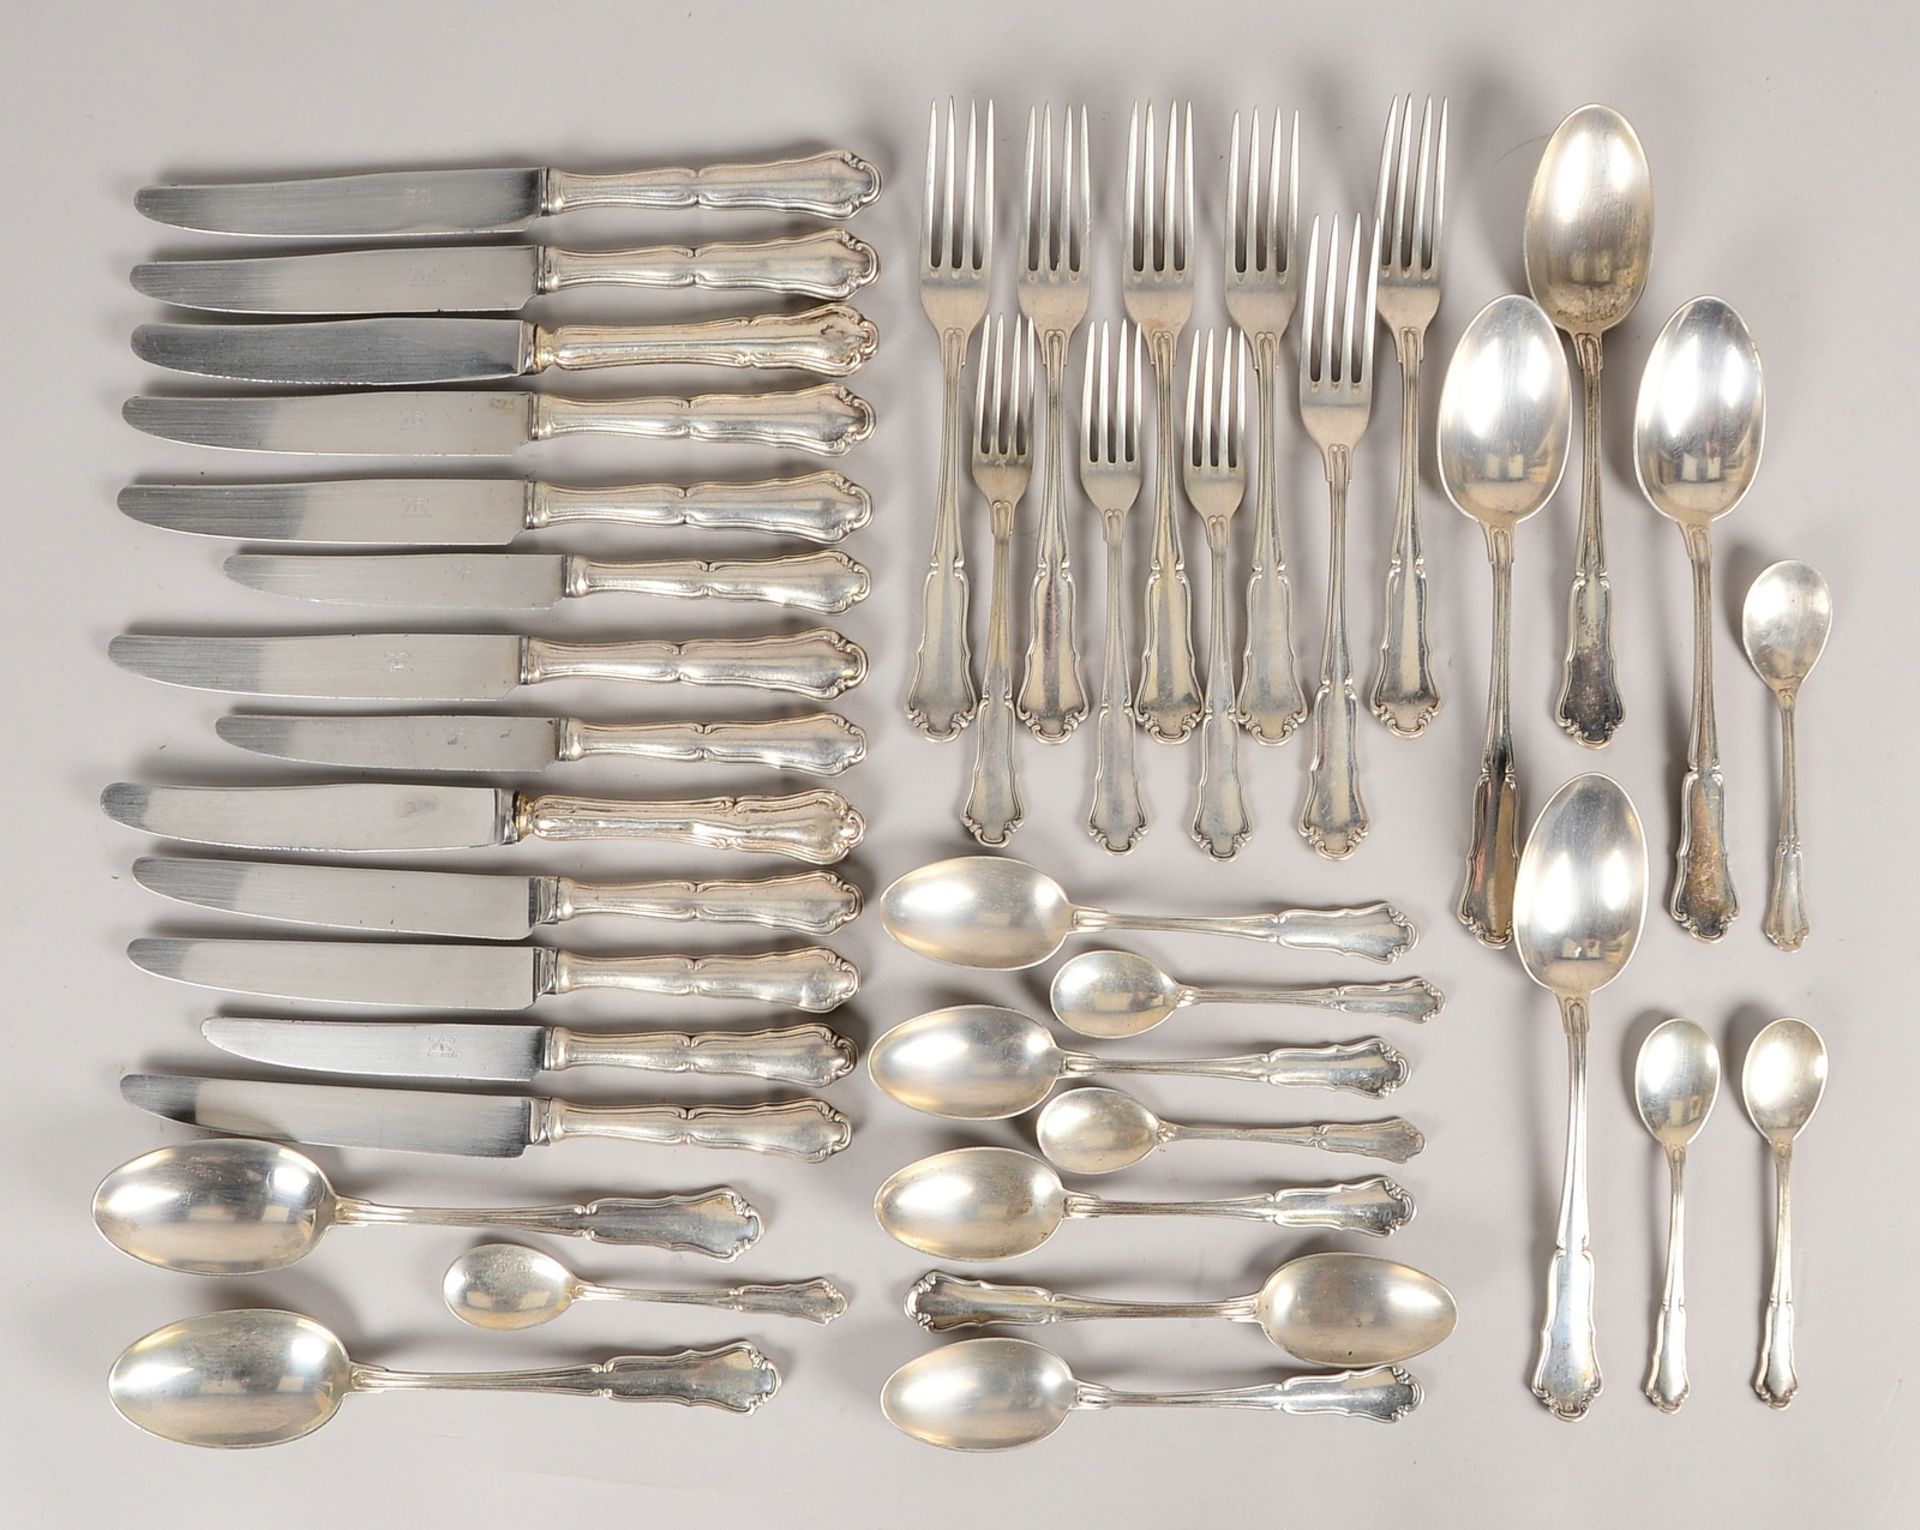 Wilkens, Tafelsilber, 800 Silber: Messer, Gabeln und Löffel; Gesamtgew. 2.571 g